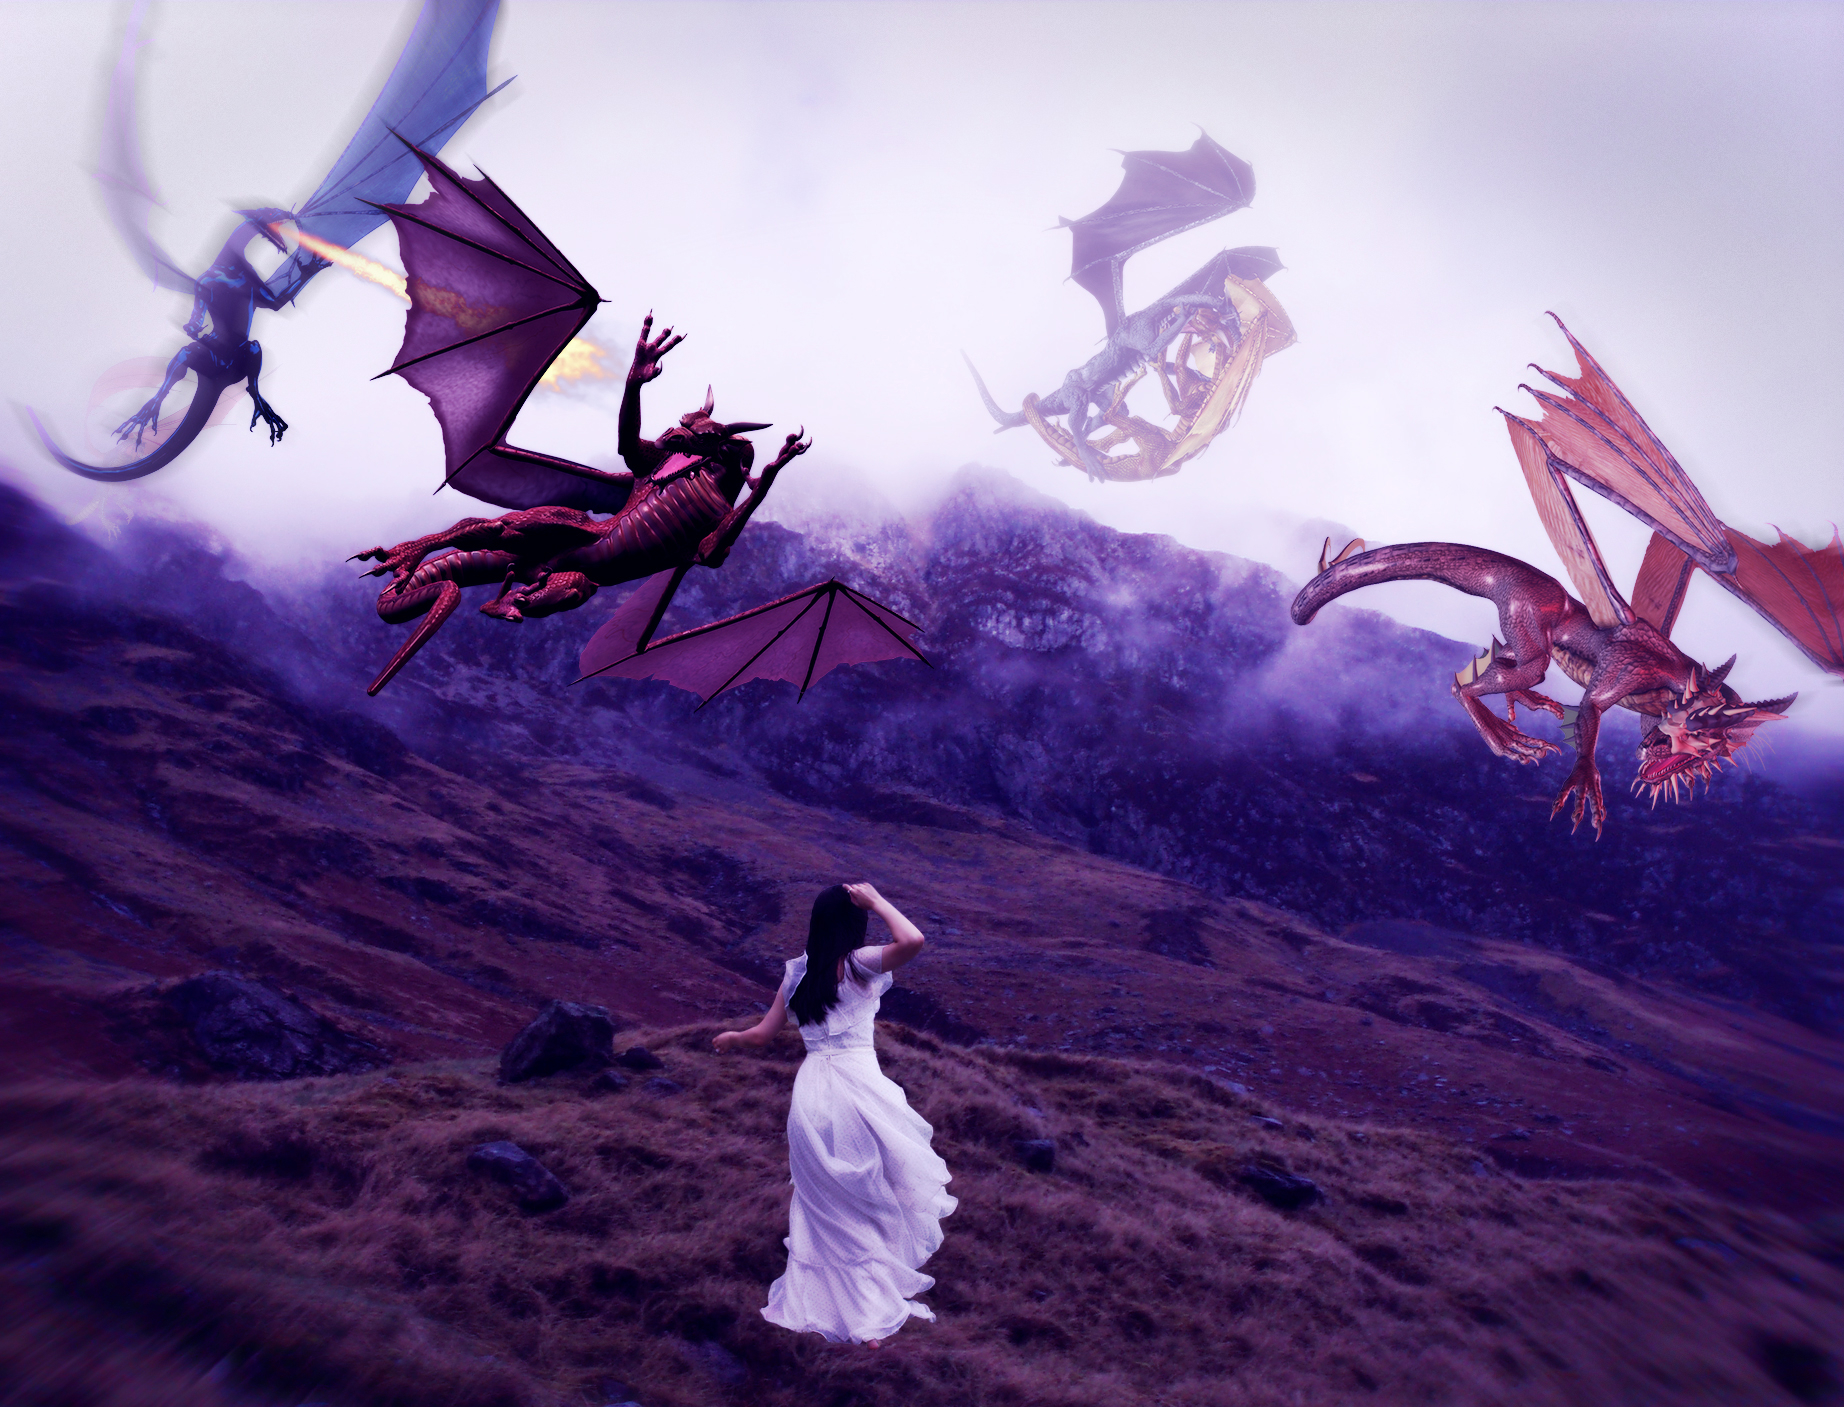 Descarga gratuita de fondo de pantalla para móvil de Fantasía, Dragón.